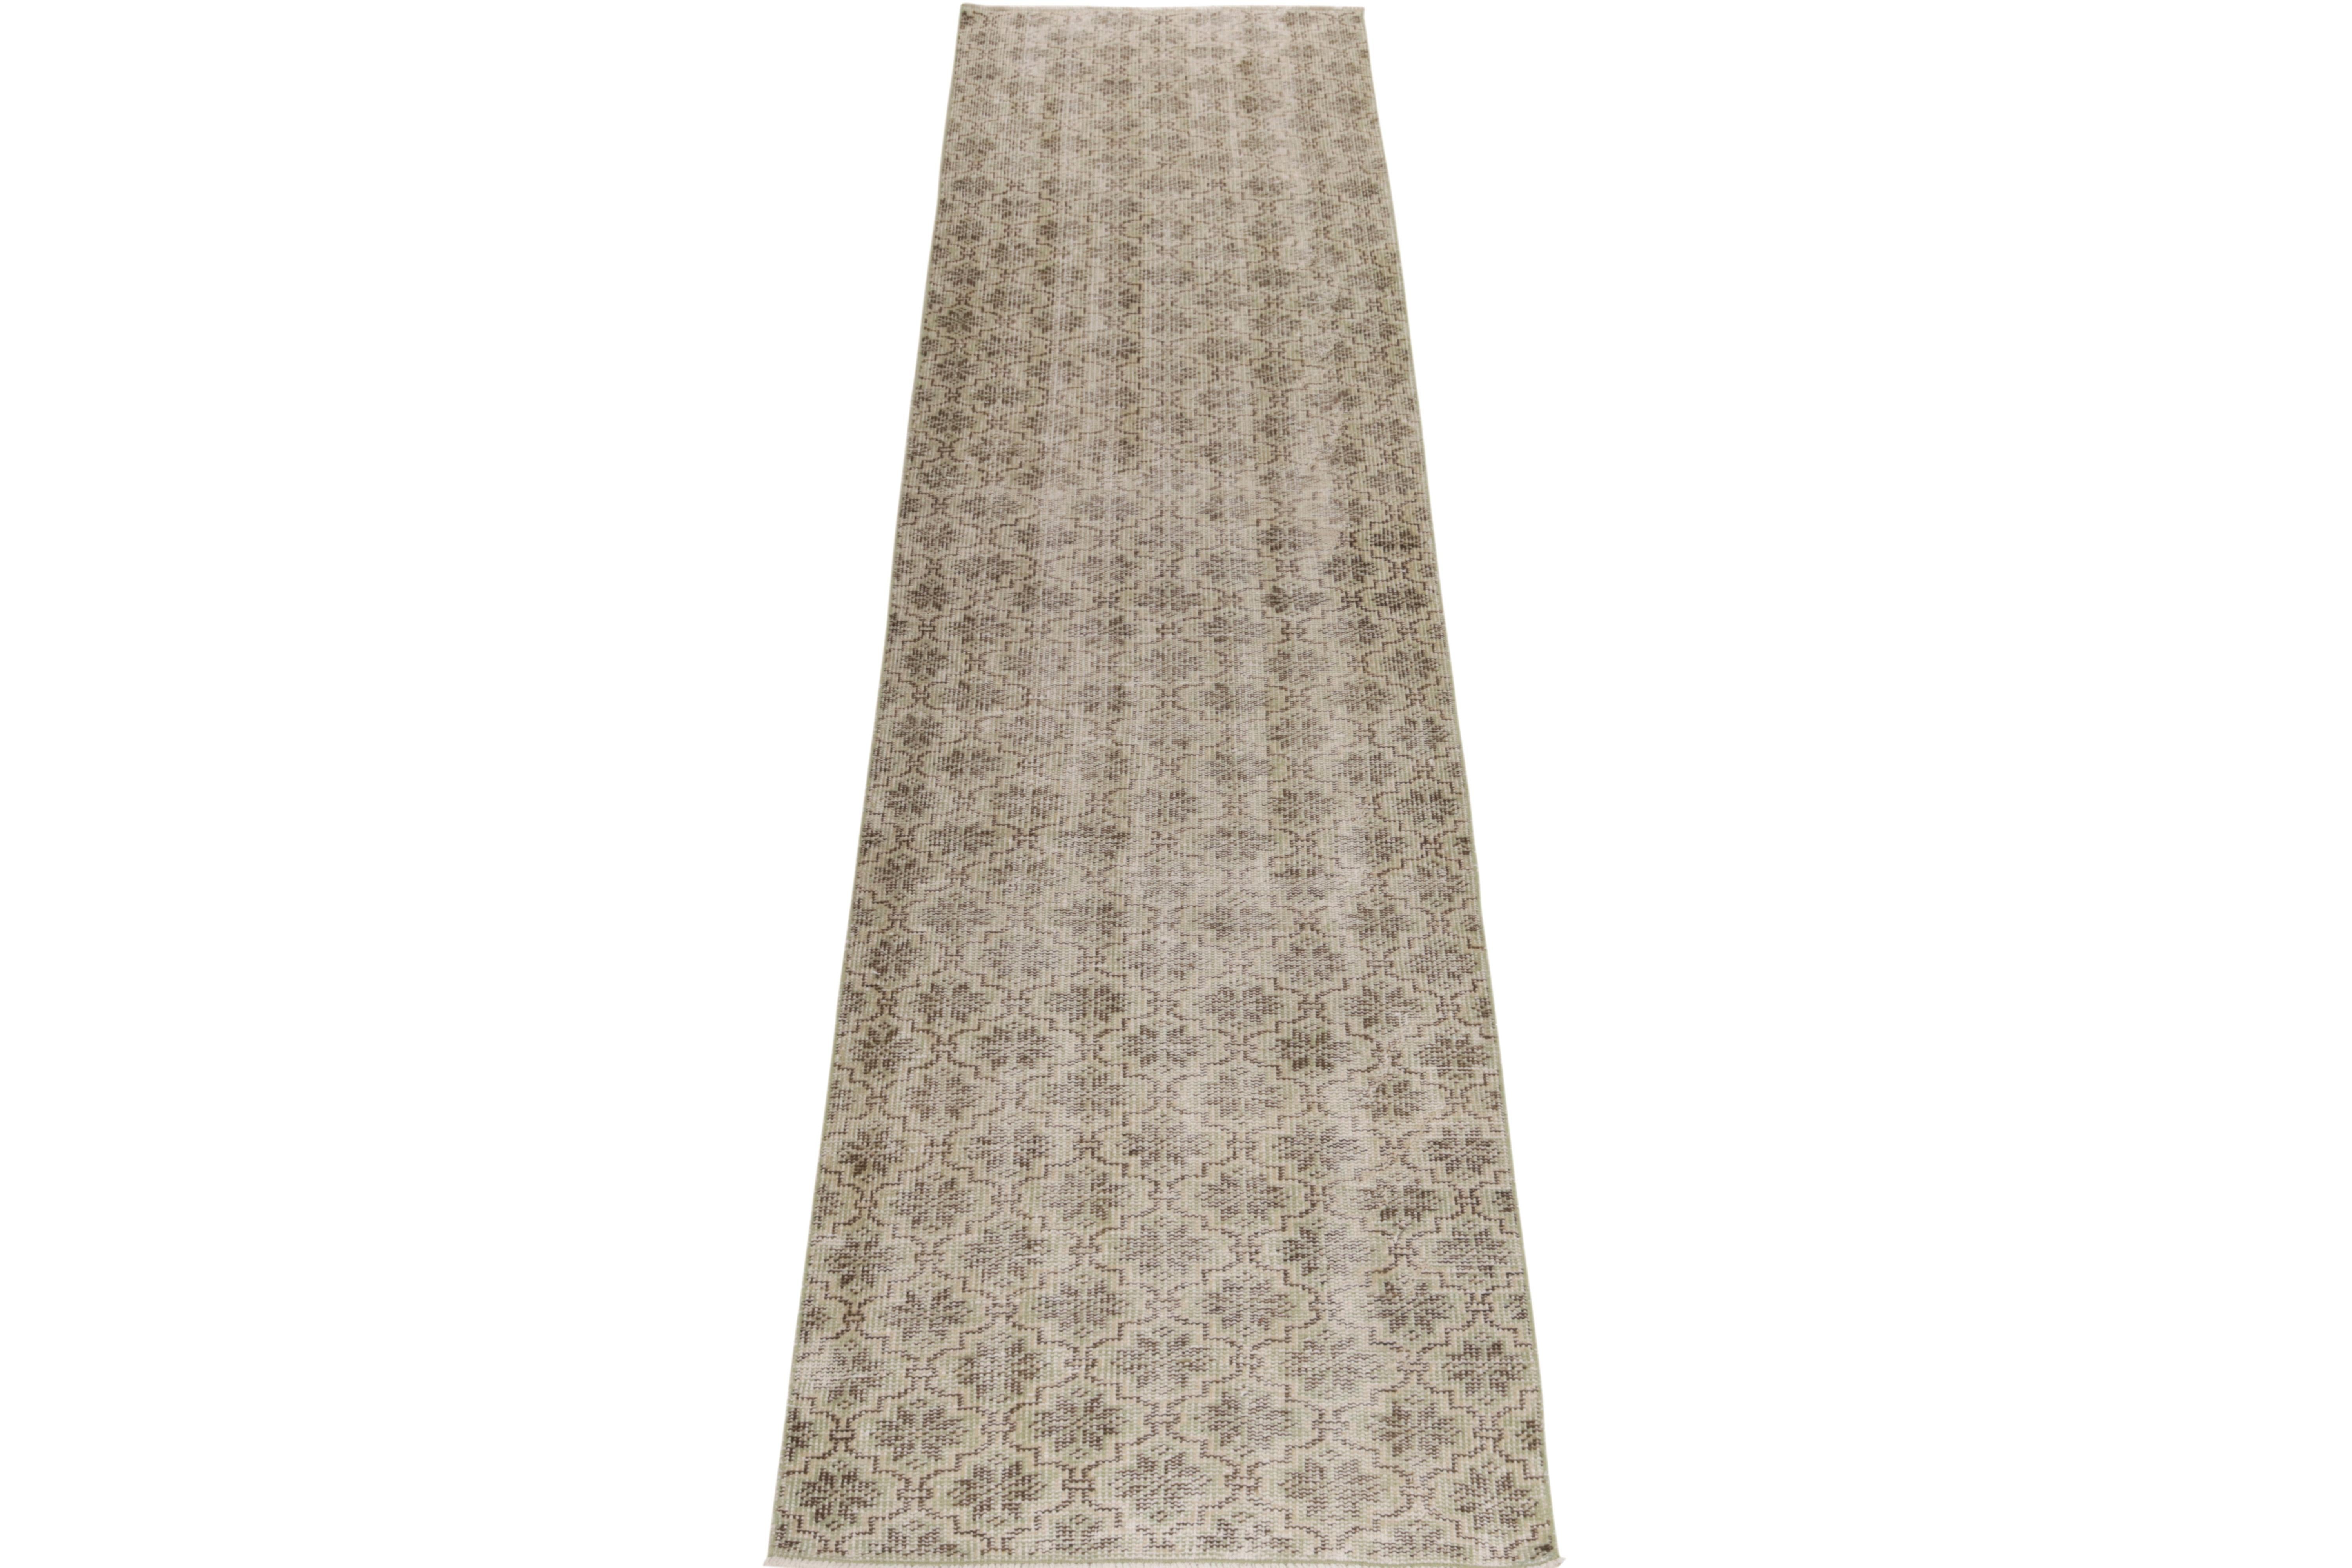 Ein Vintage-Teppich aus den 1960er Jahren aus der Pascha-Kollektion von Rug & Kilim, der zu den seltenen Werken des türkischen Designers Bold gehört. 

Dieser aus Wolle handgeknüpfte Läufer (2x11) zeigt ein florales, geometrisches Muster in